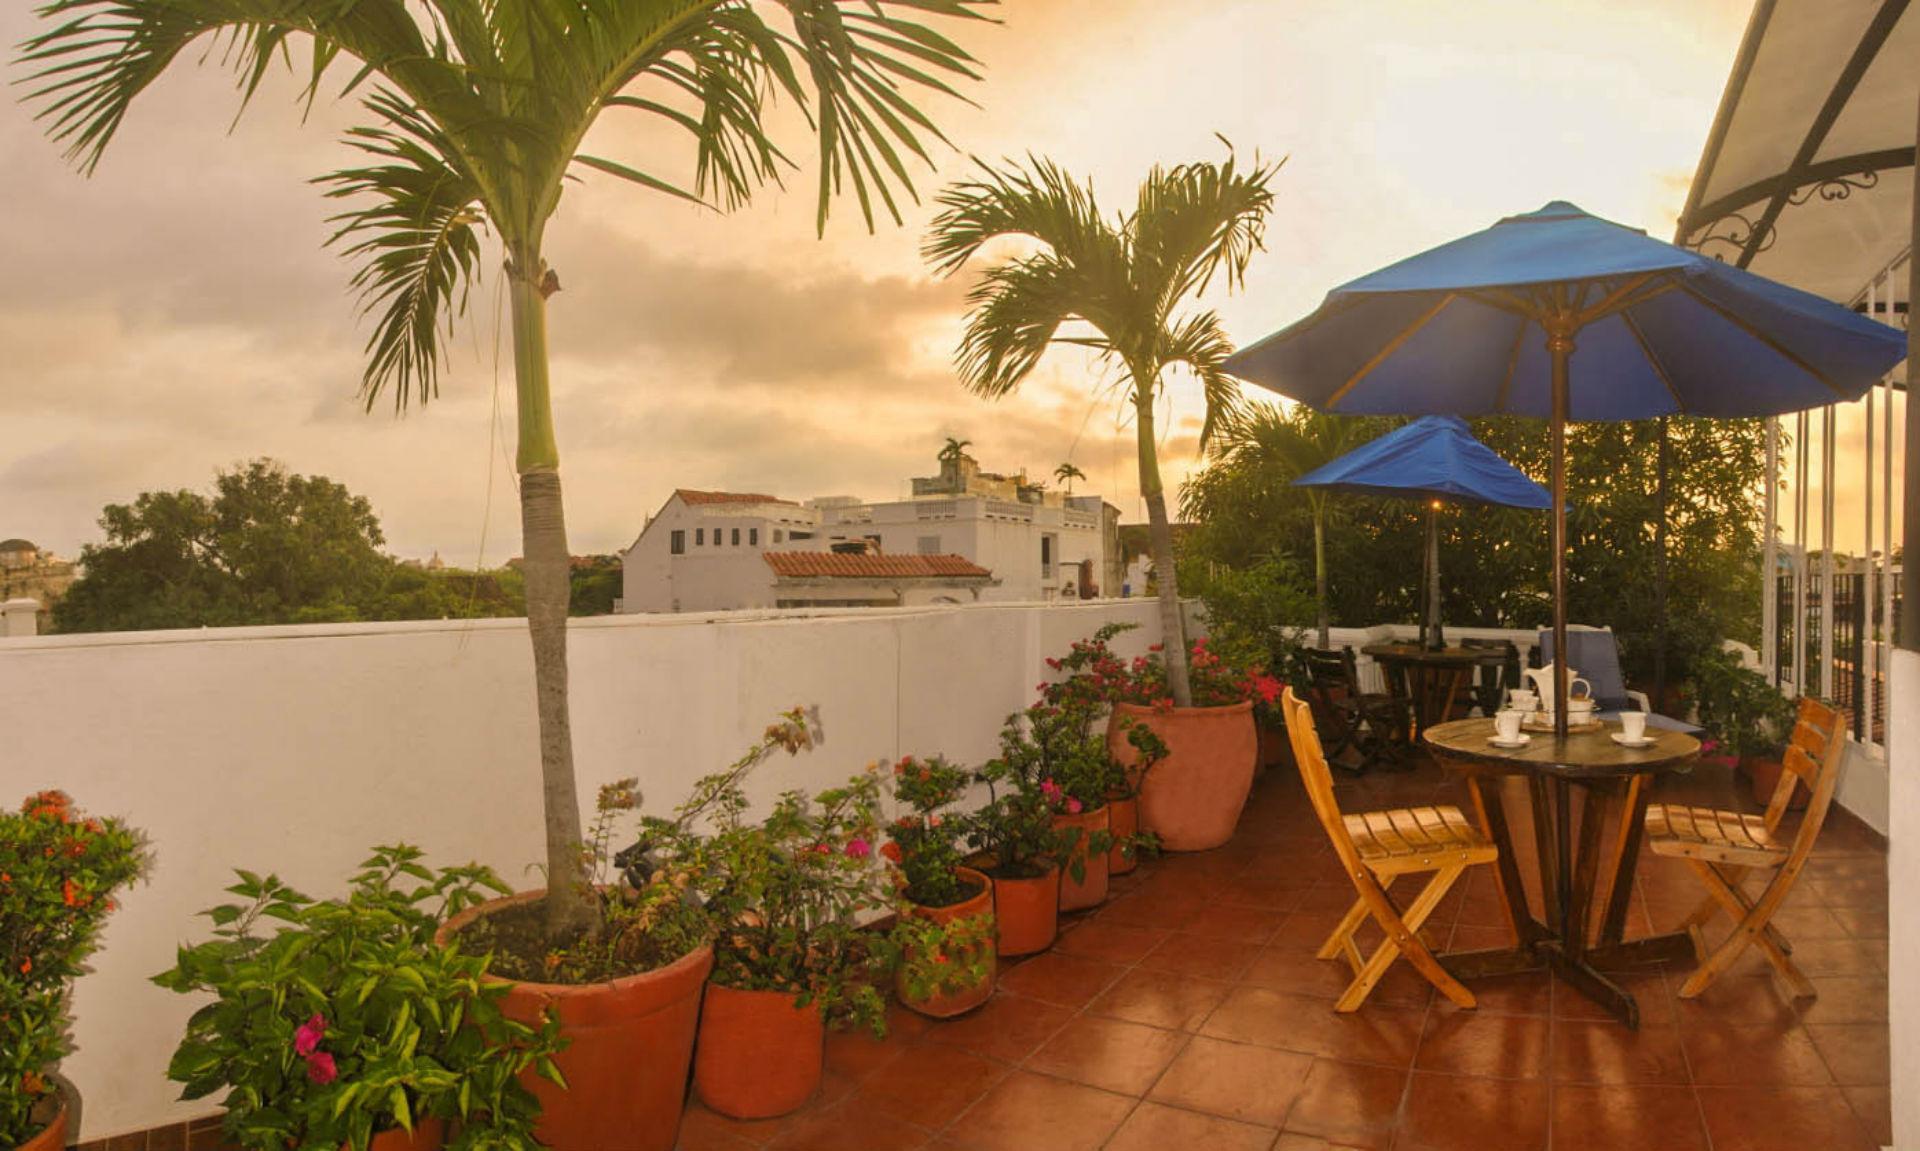 Hotel 3 Banderas Cartagena Екстериор снимка